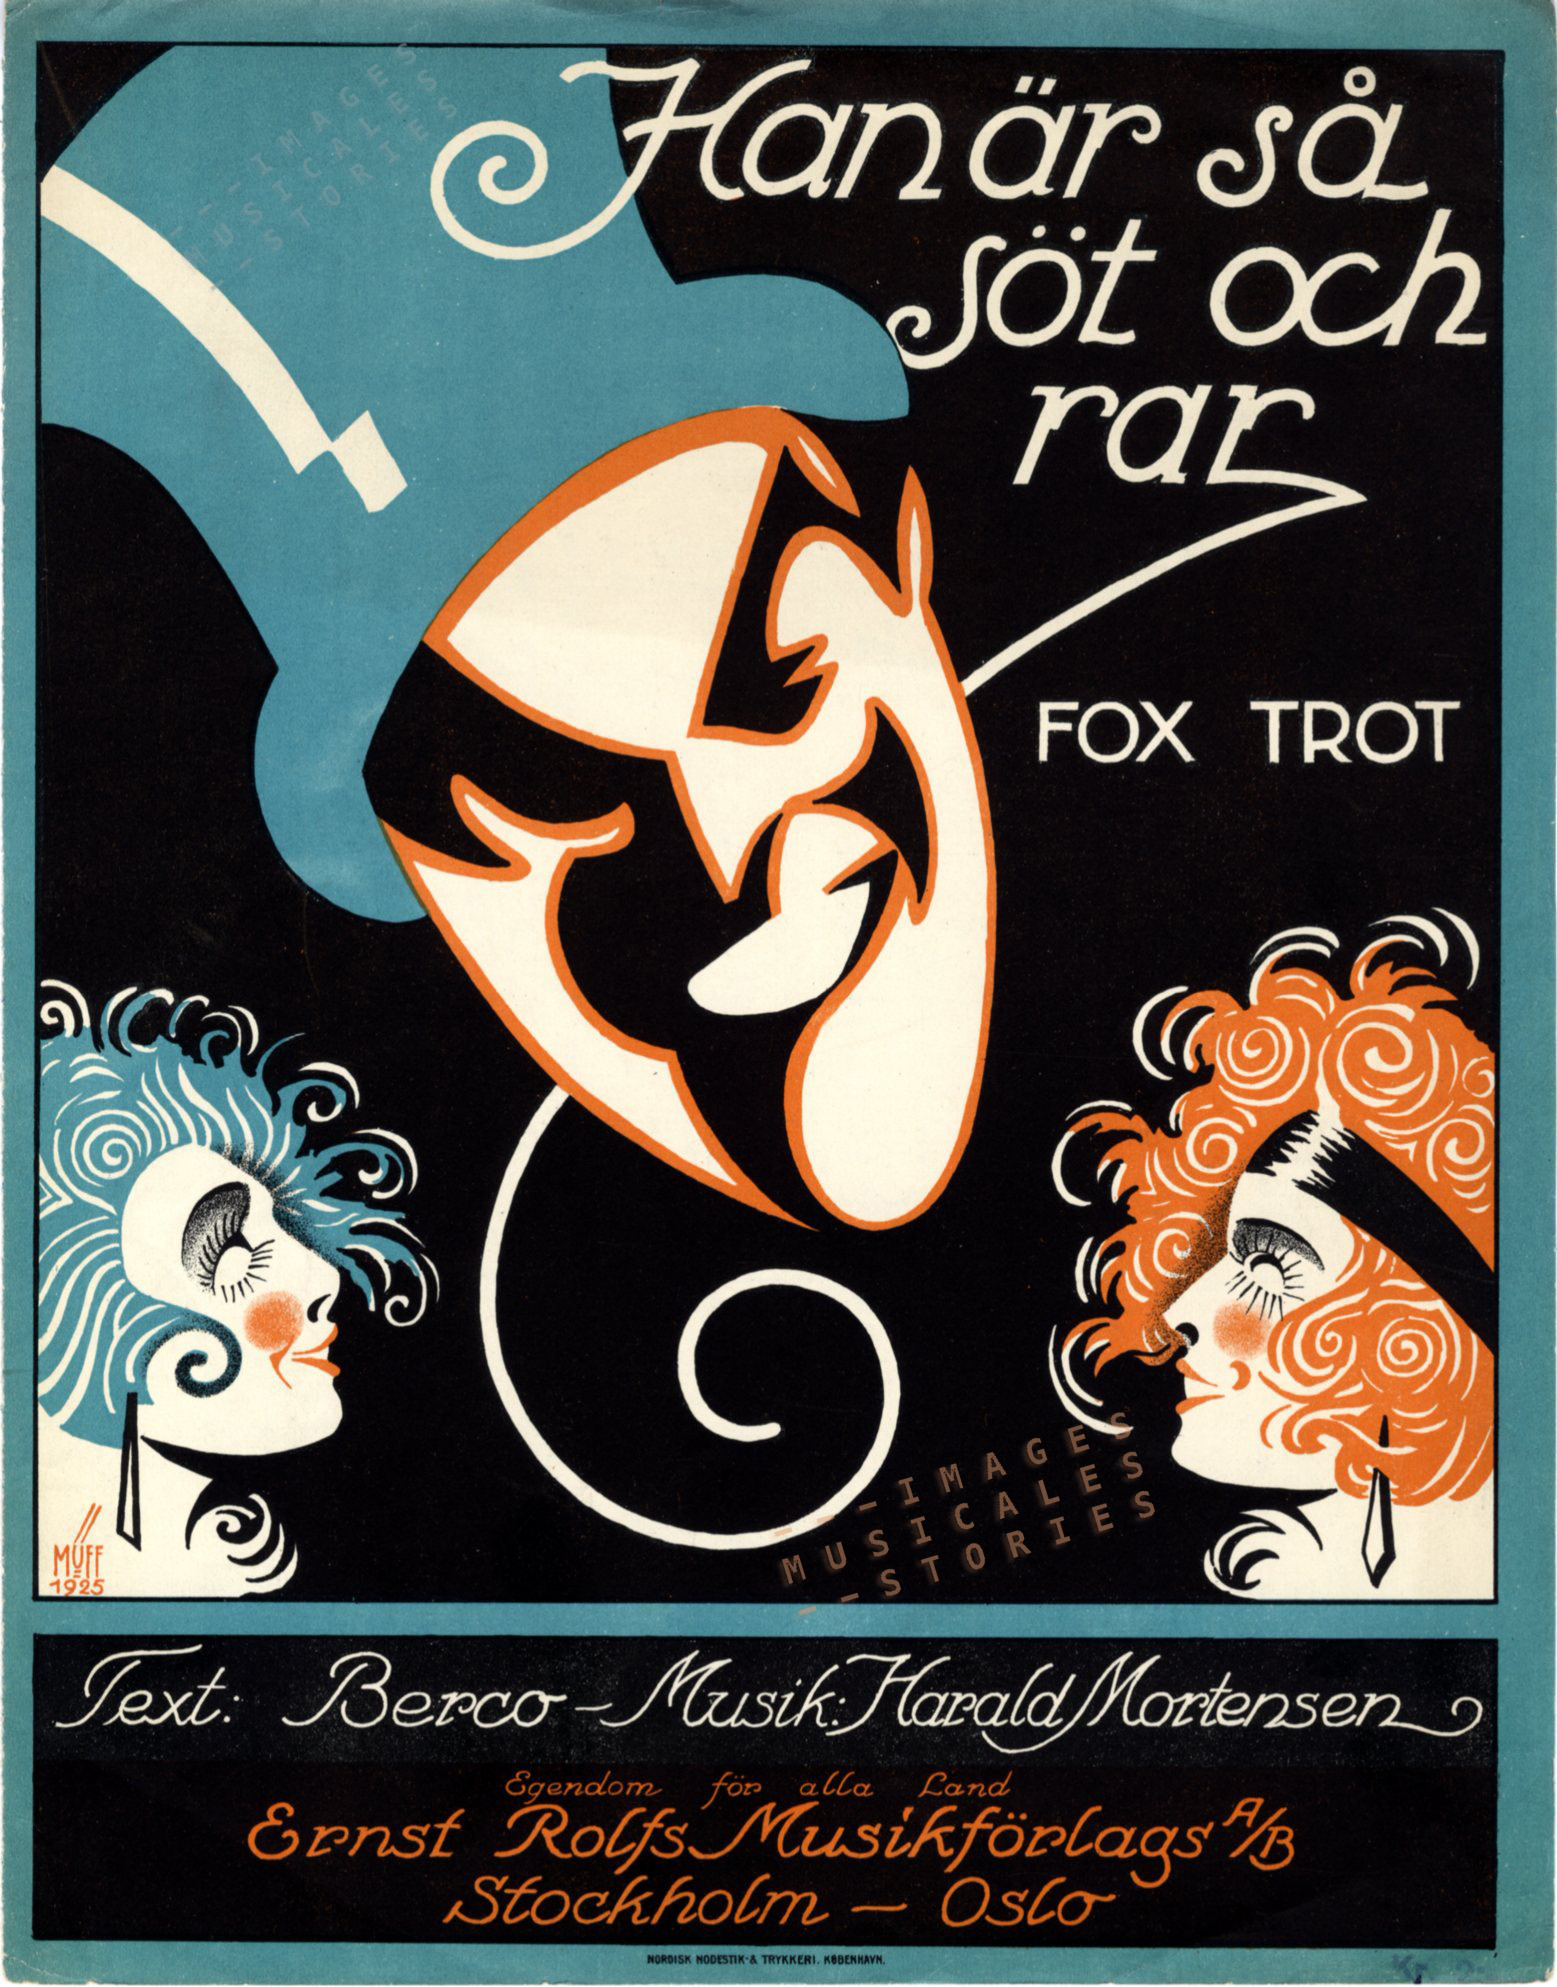 'Han är så söt och rar', music by Harald Mortensen (1925) - click on image to enlarge